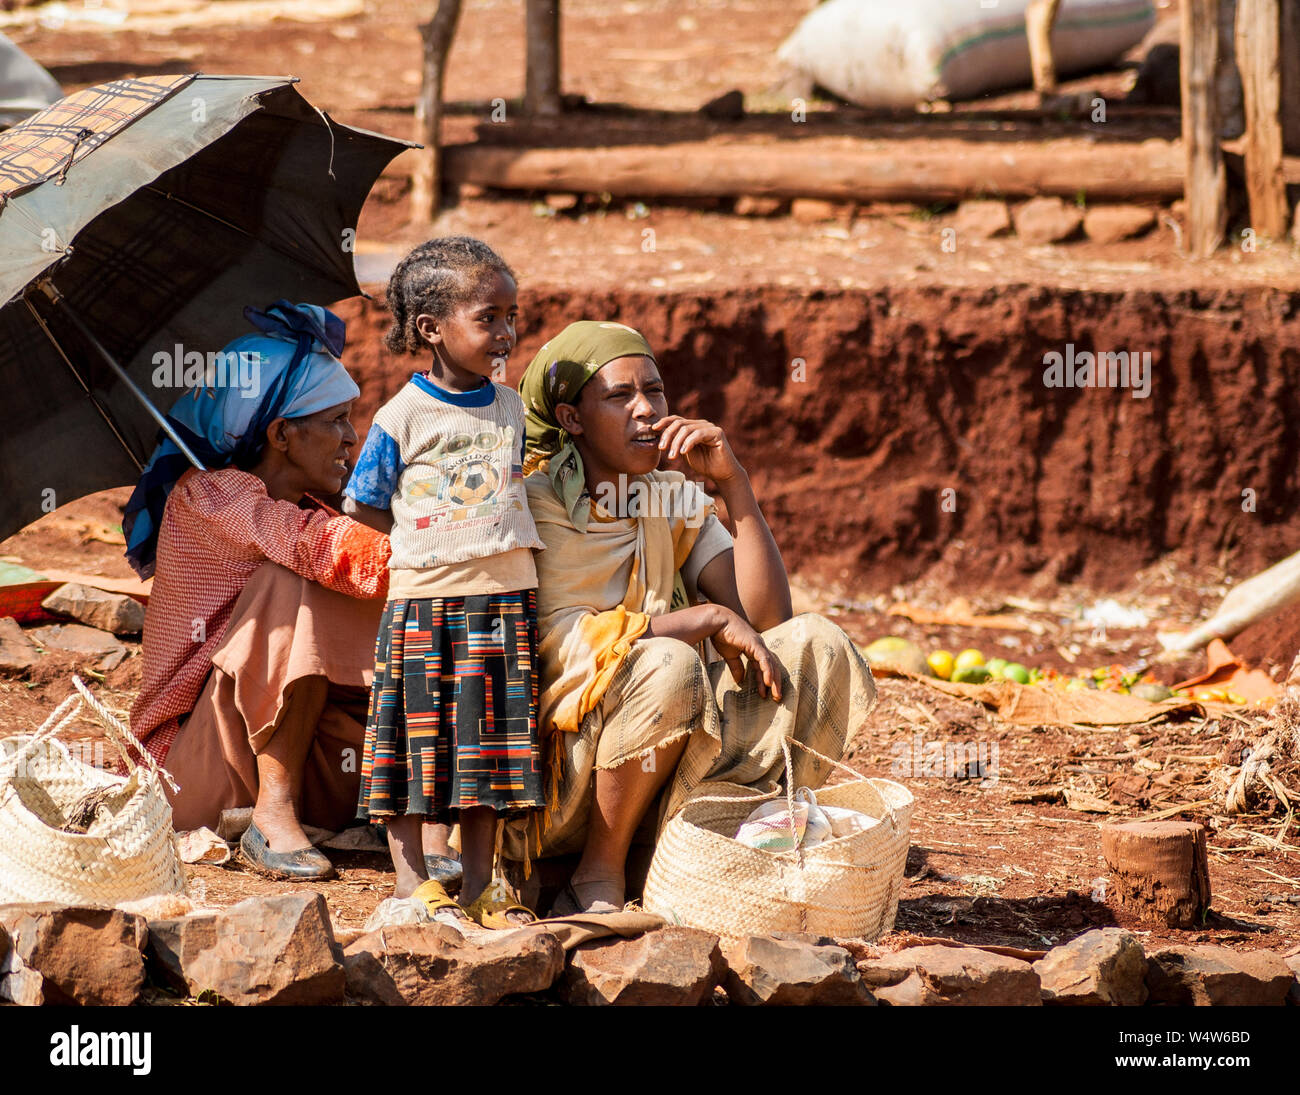 Deux jeunes femmes traders et un enfant à la recherche après leur production dans un marché rural à Illubabor, Ethiopie Banque D'Images